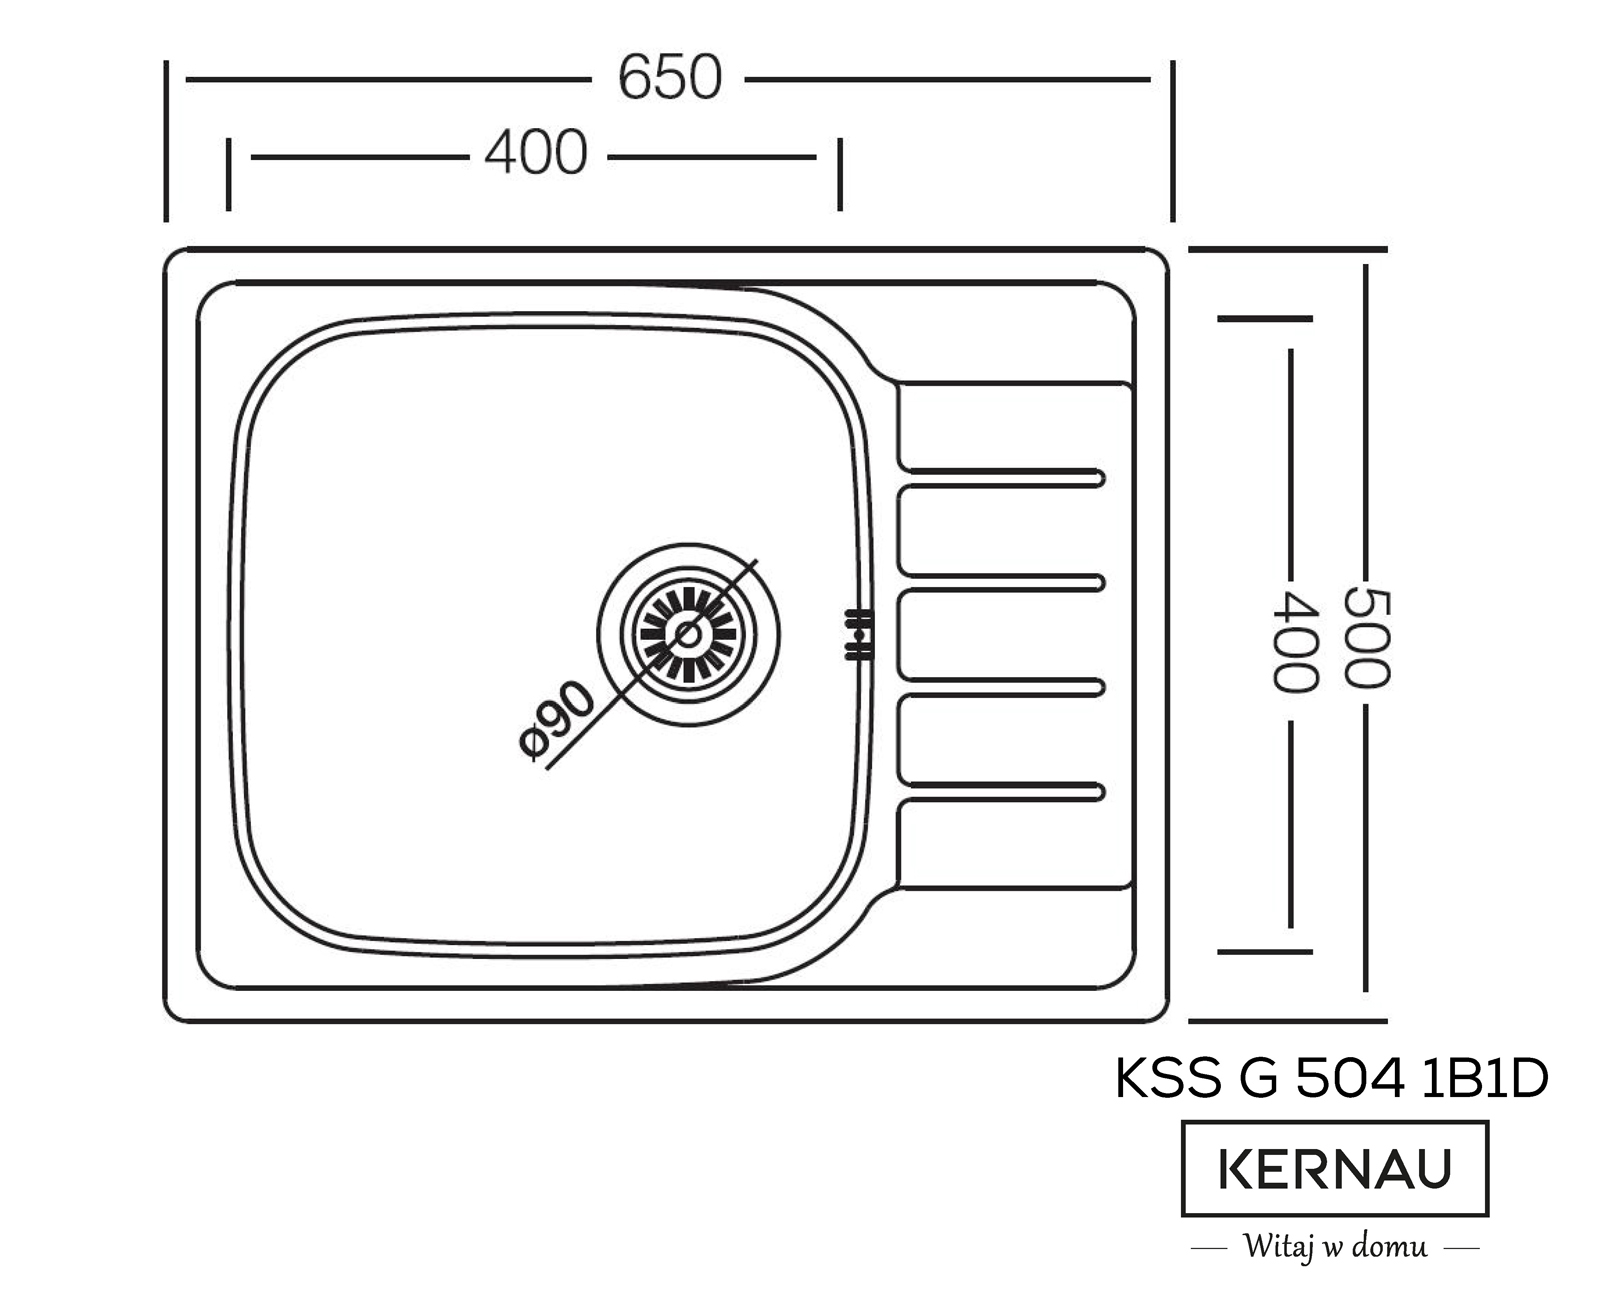 KSS G 504 1B1D LINEN